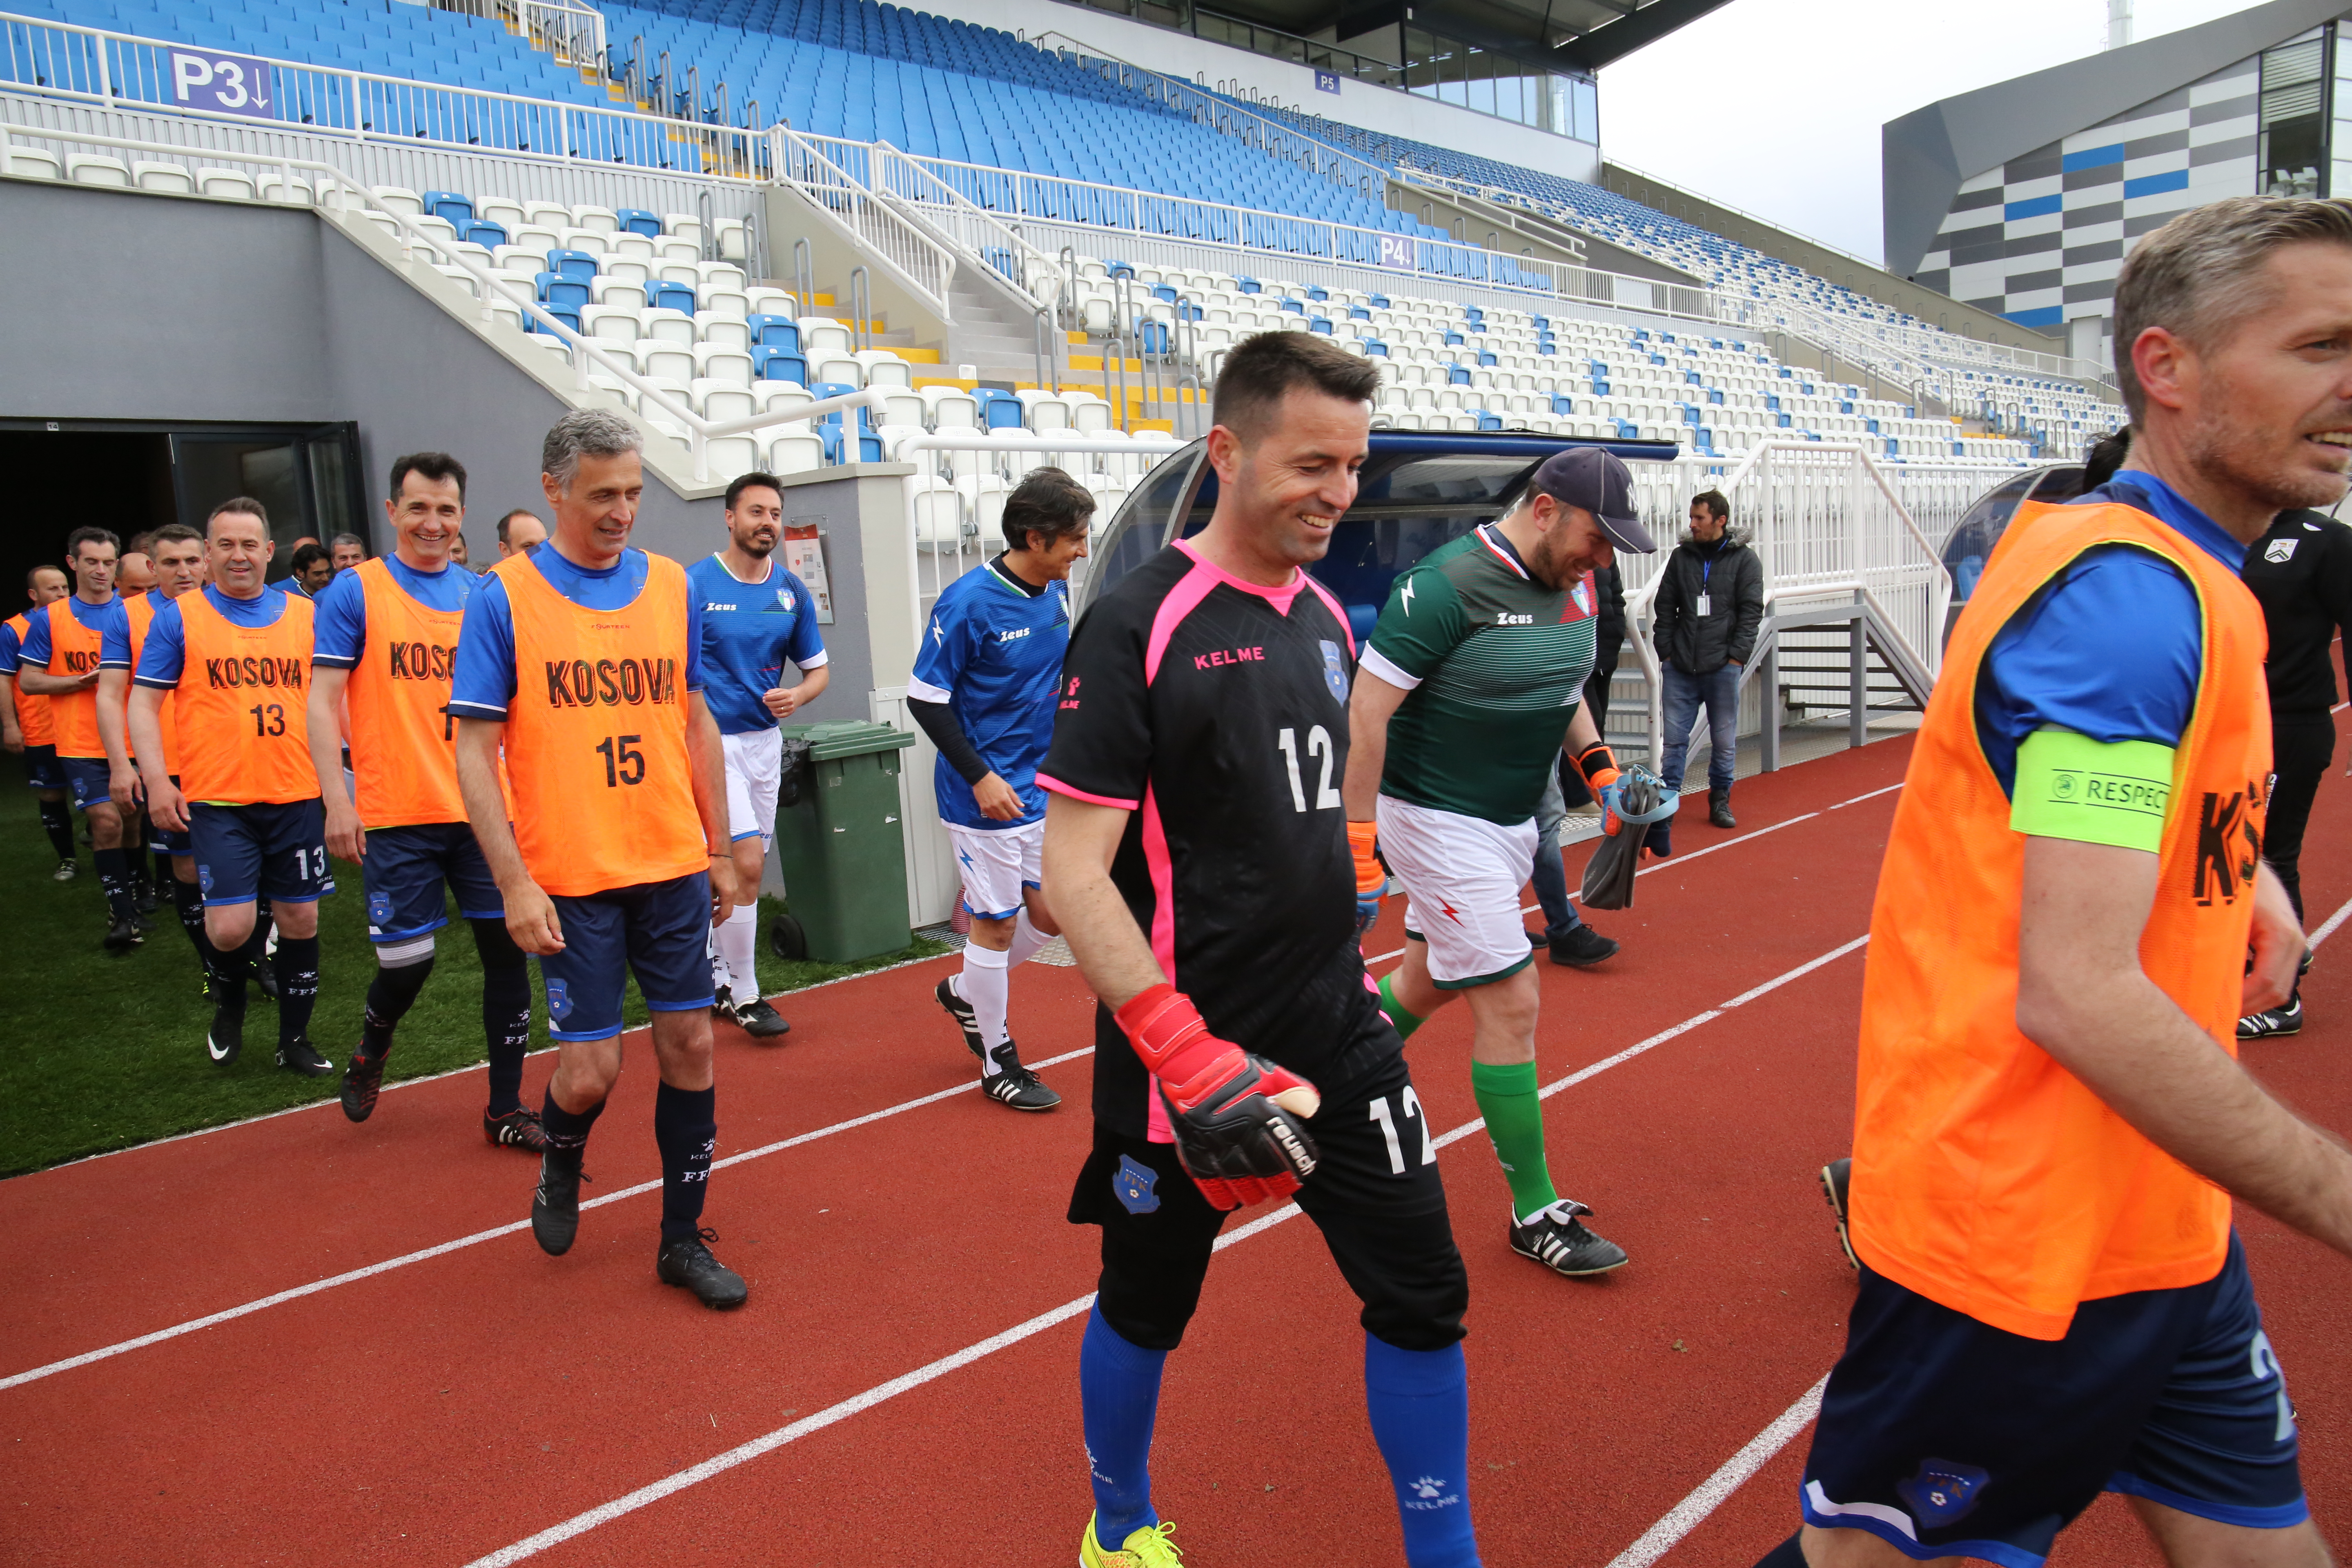 Përfaqësuesit e sistemit prokurorial dhe gjyqësor të Kosovës zhvilluan një ndeshje futbolli me përfaqësuesit e sistemit gjyqësor të Italisë